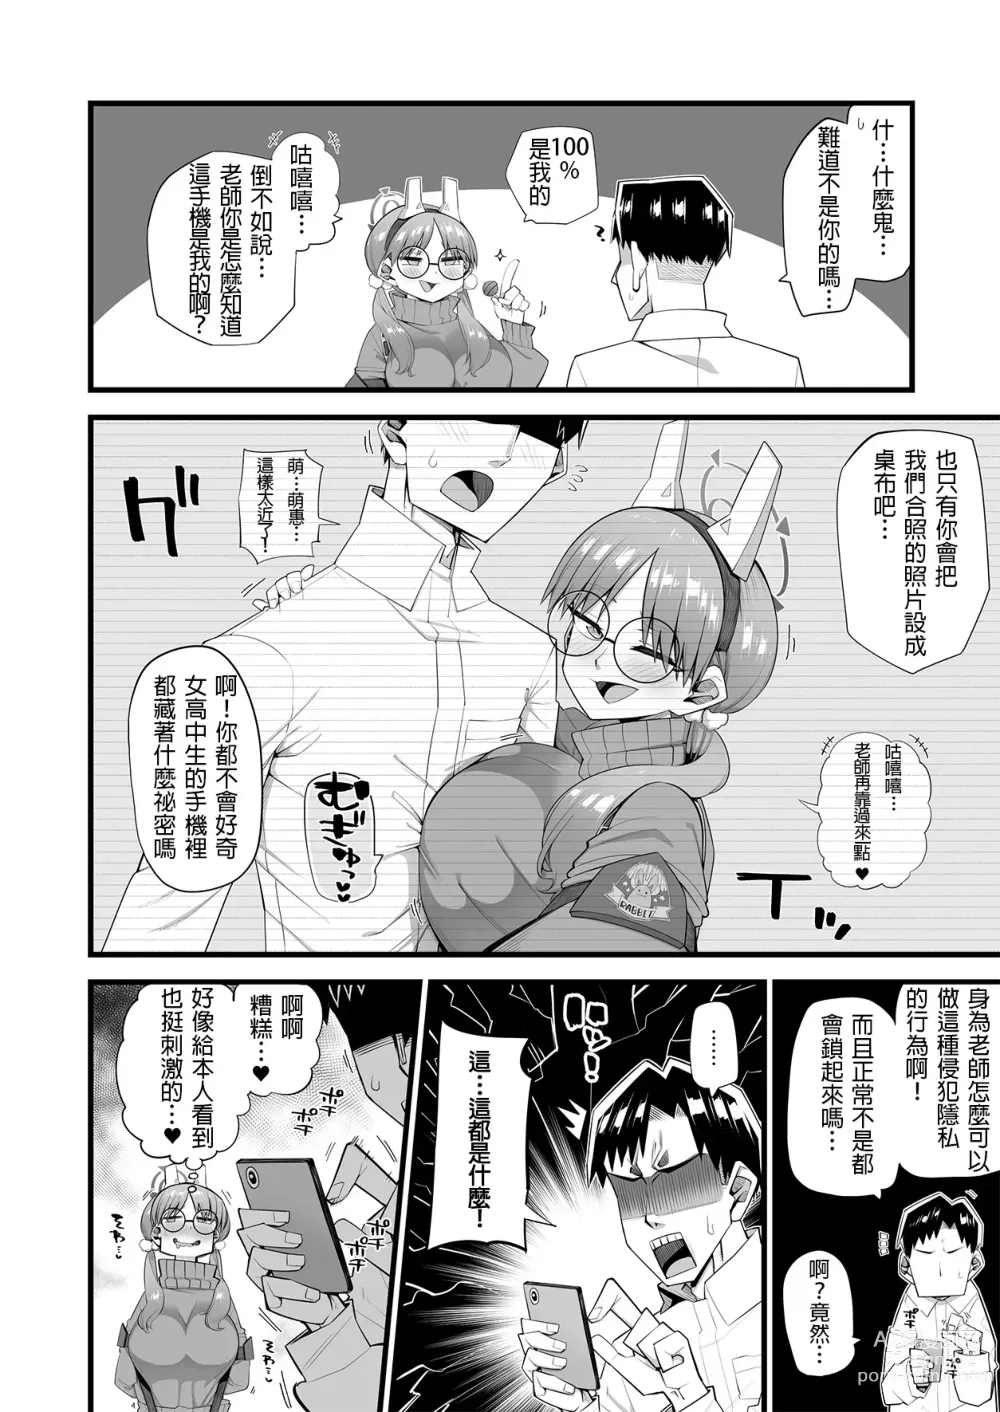 Page 5 of doujinshi Moe wa Sensei de Hametsu shitai